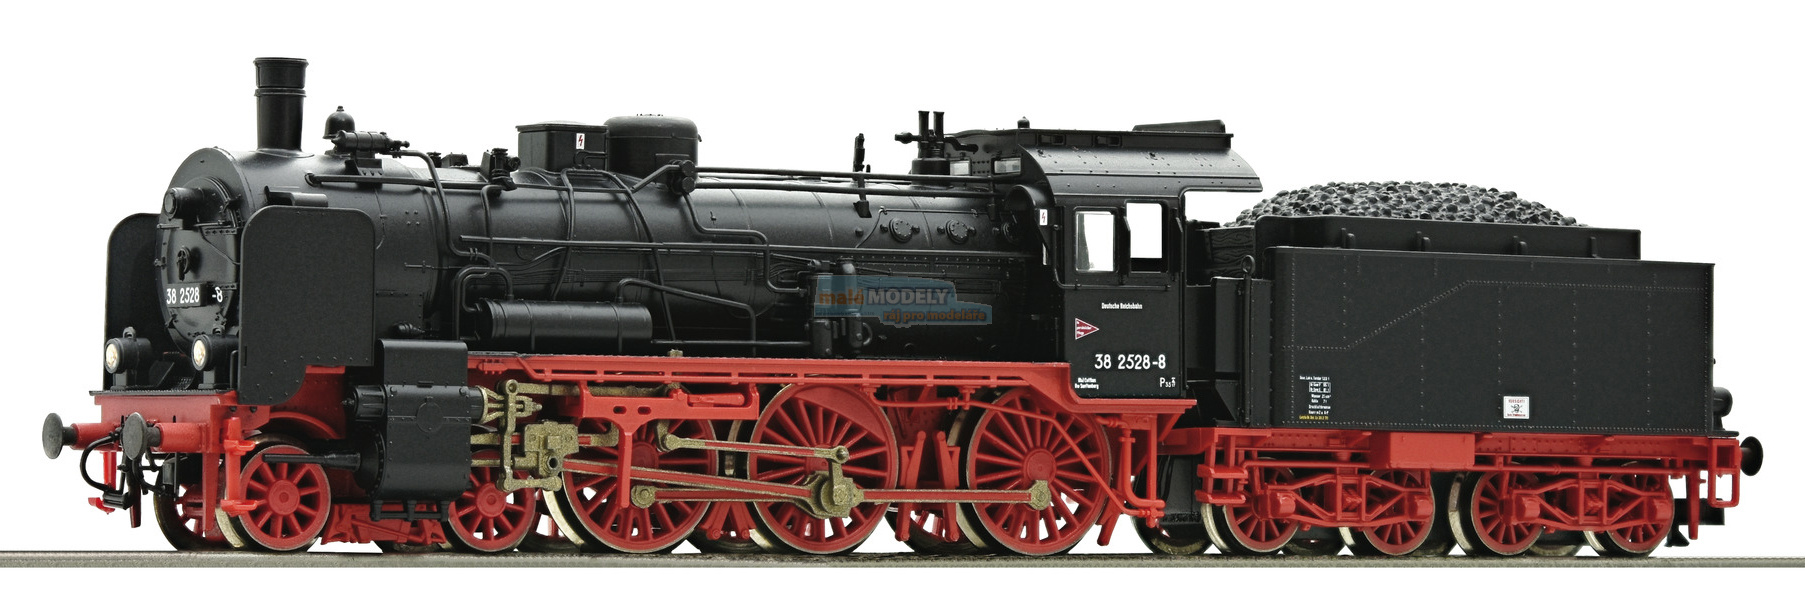 Parní lokomotiva BR 38